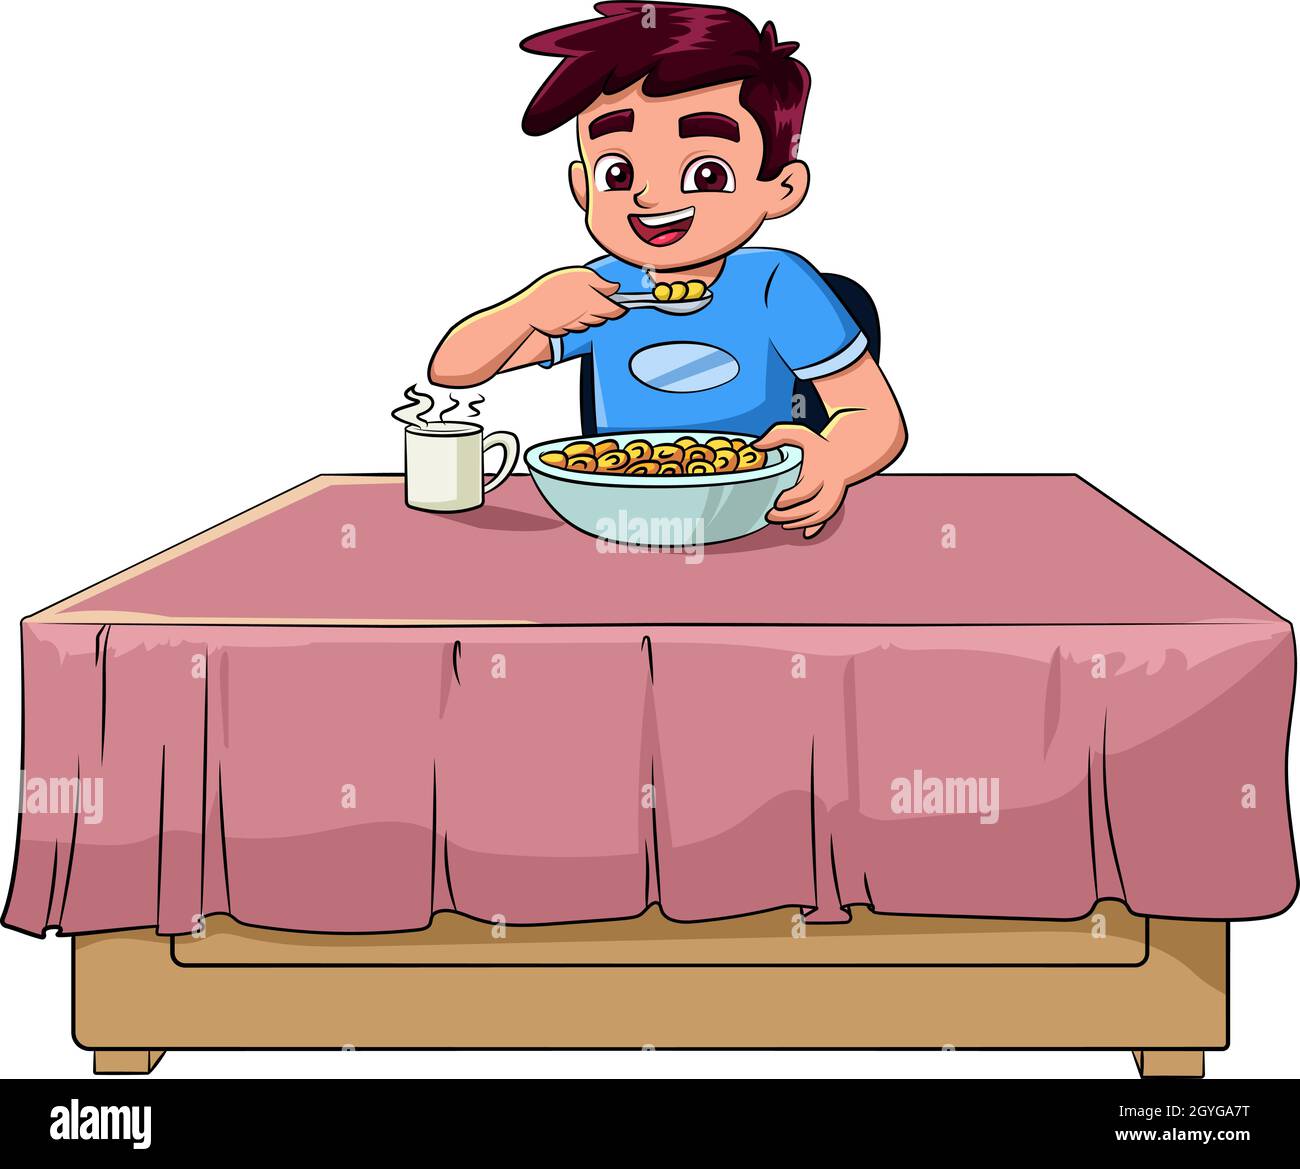 Ilustración de un vector de dibujos animados de un niño comiendo el desayuno  Imagen Vector de stock - Alamy